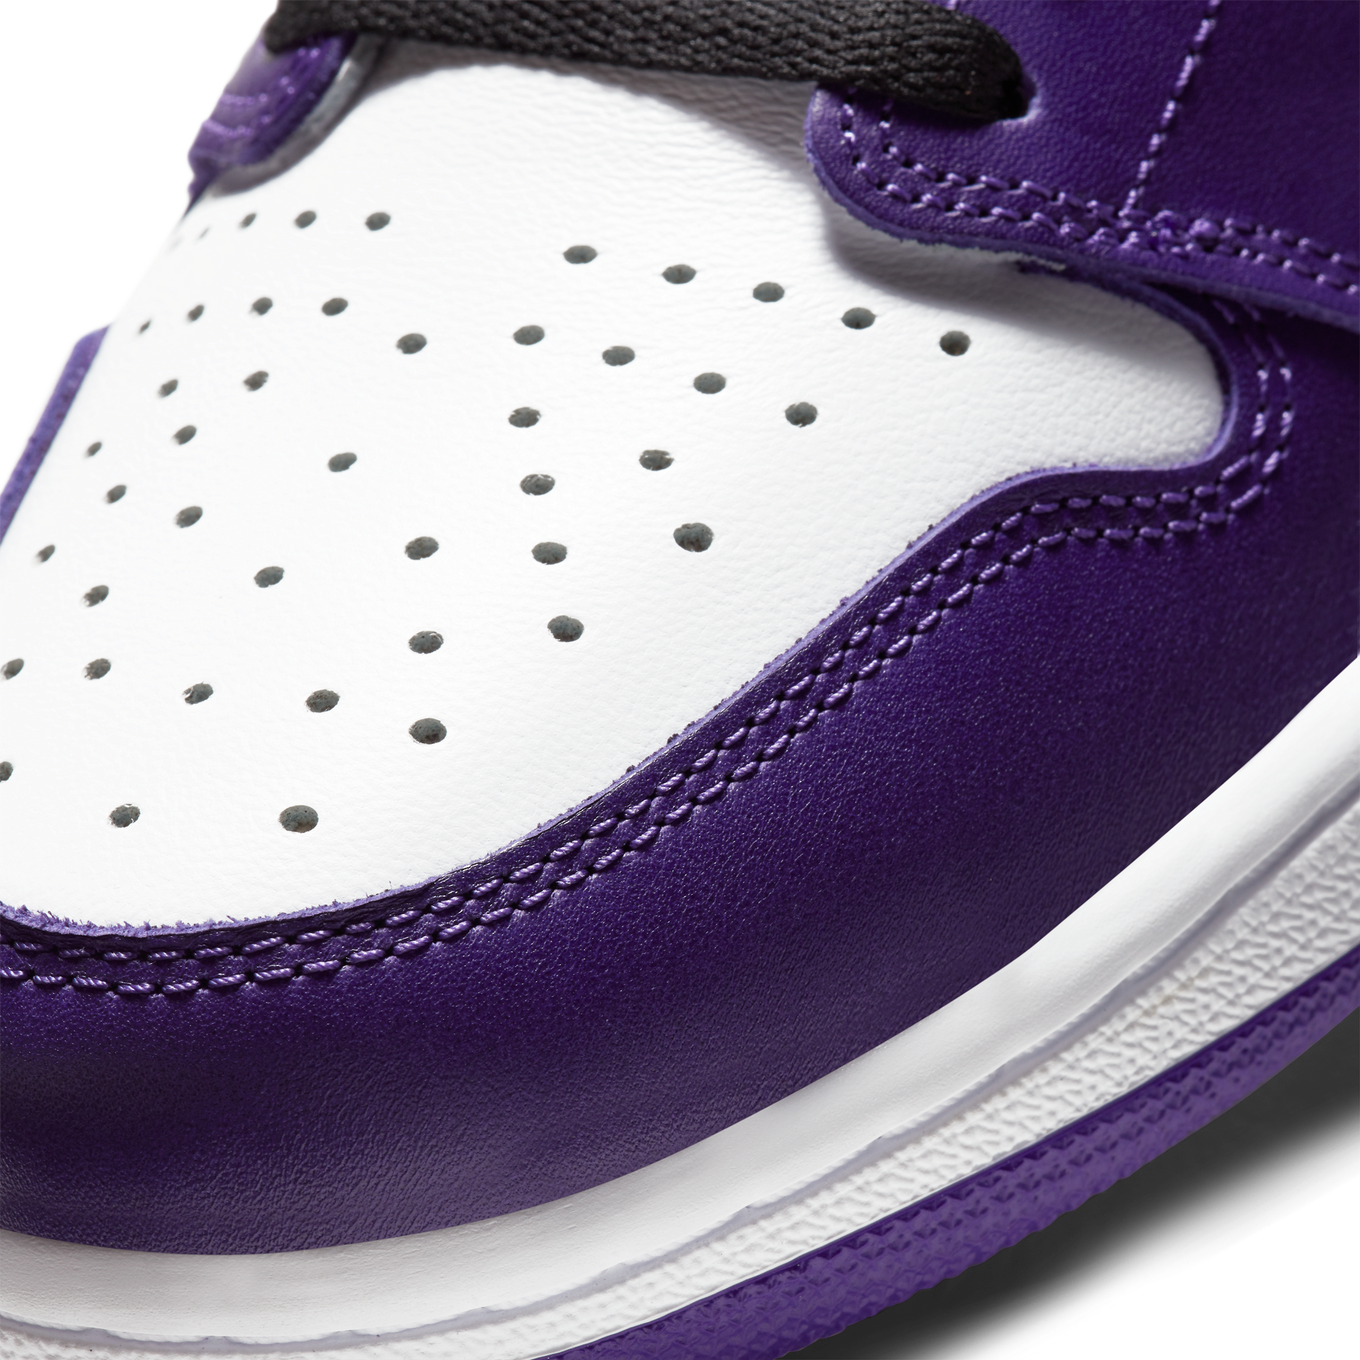 purple aj1s